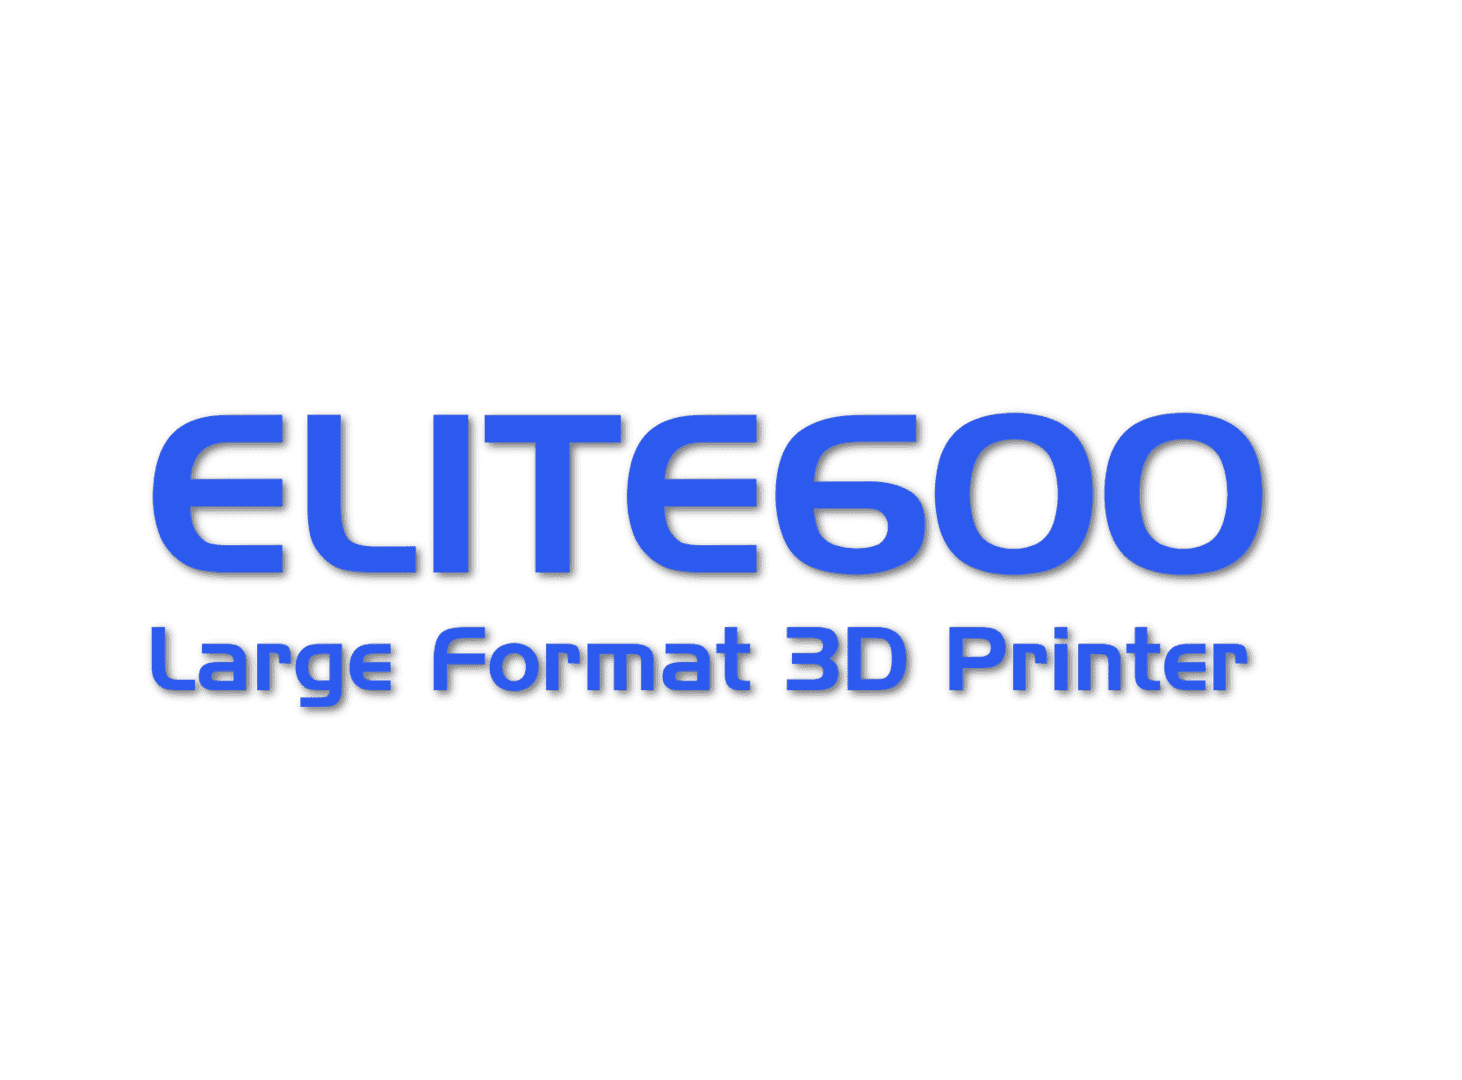 Elite600 - Large Format 3D Printer